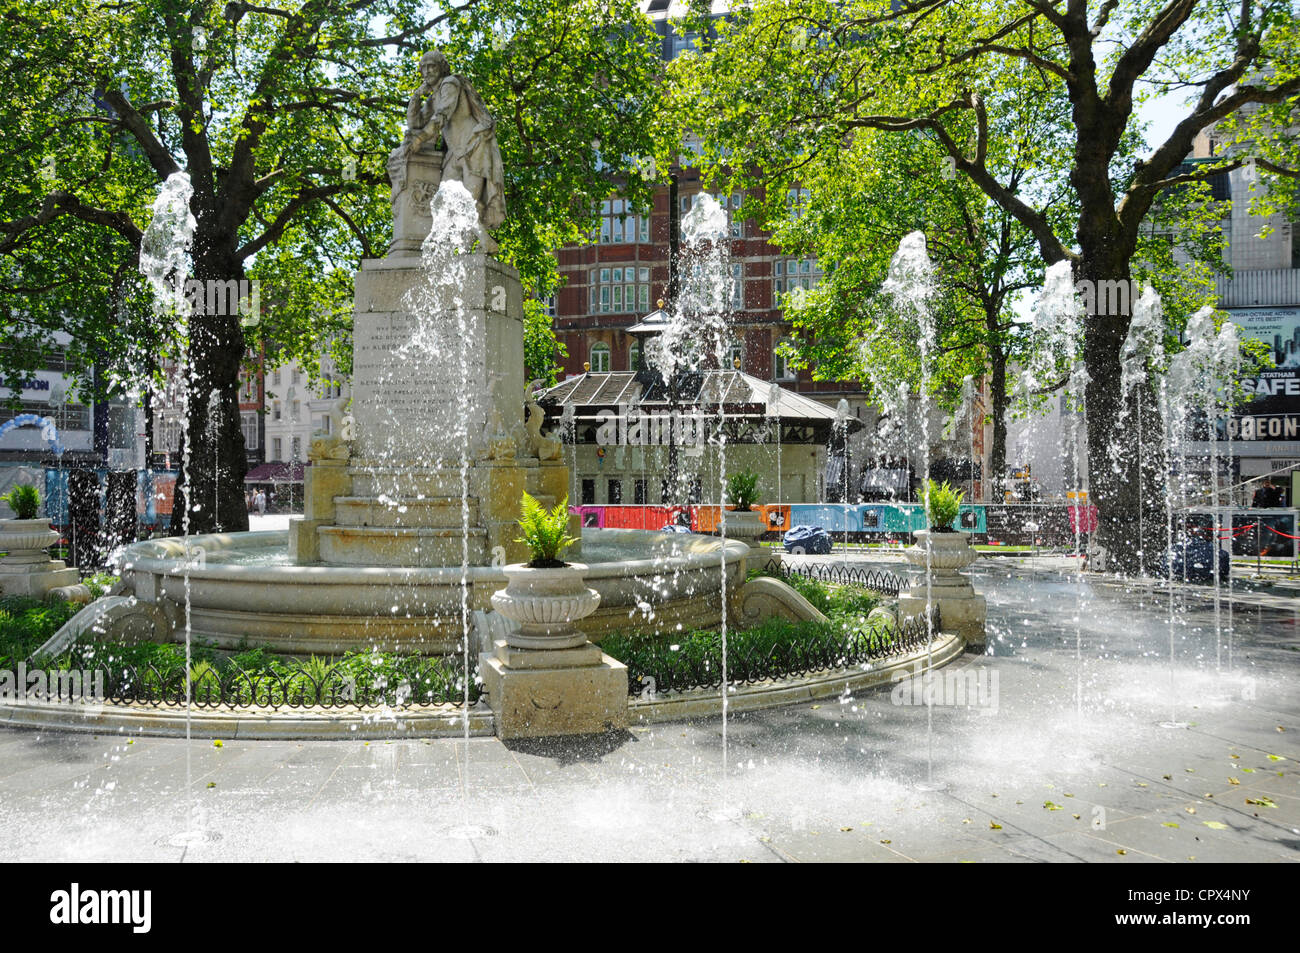 Nouvelles fontaines dans les jardins rénovés de Leicester Square avec statue William Shakespeare West End Londres Angleterre Royaume-Uni Banque D'Images